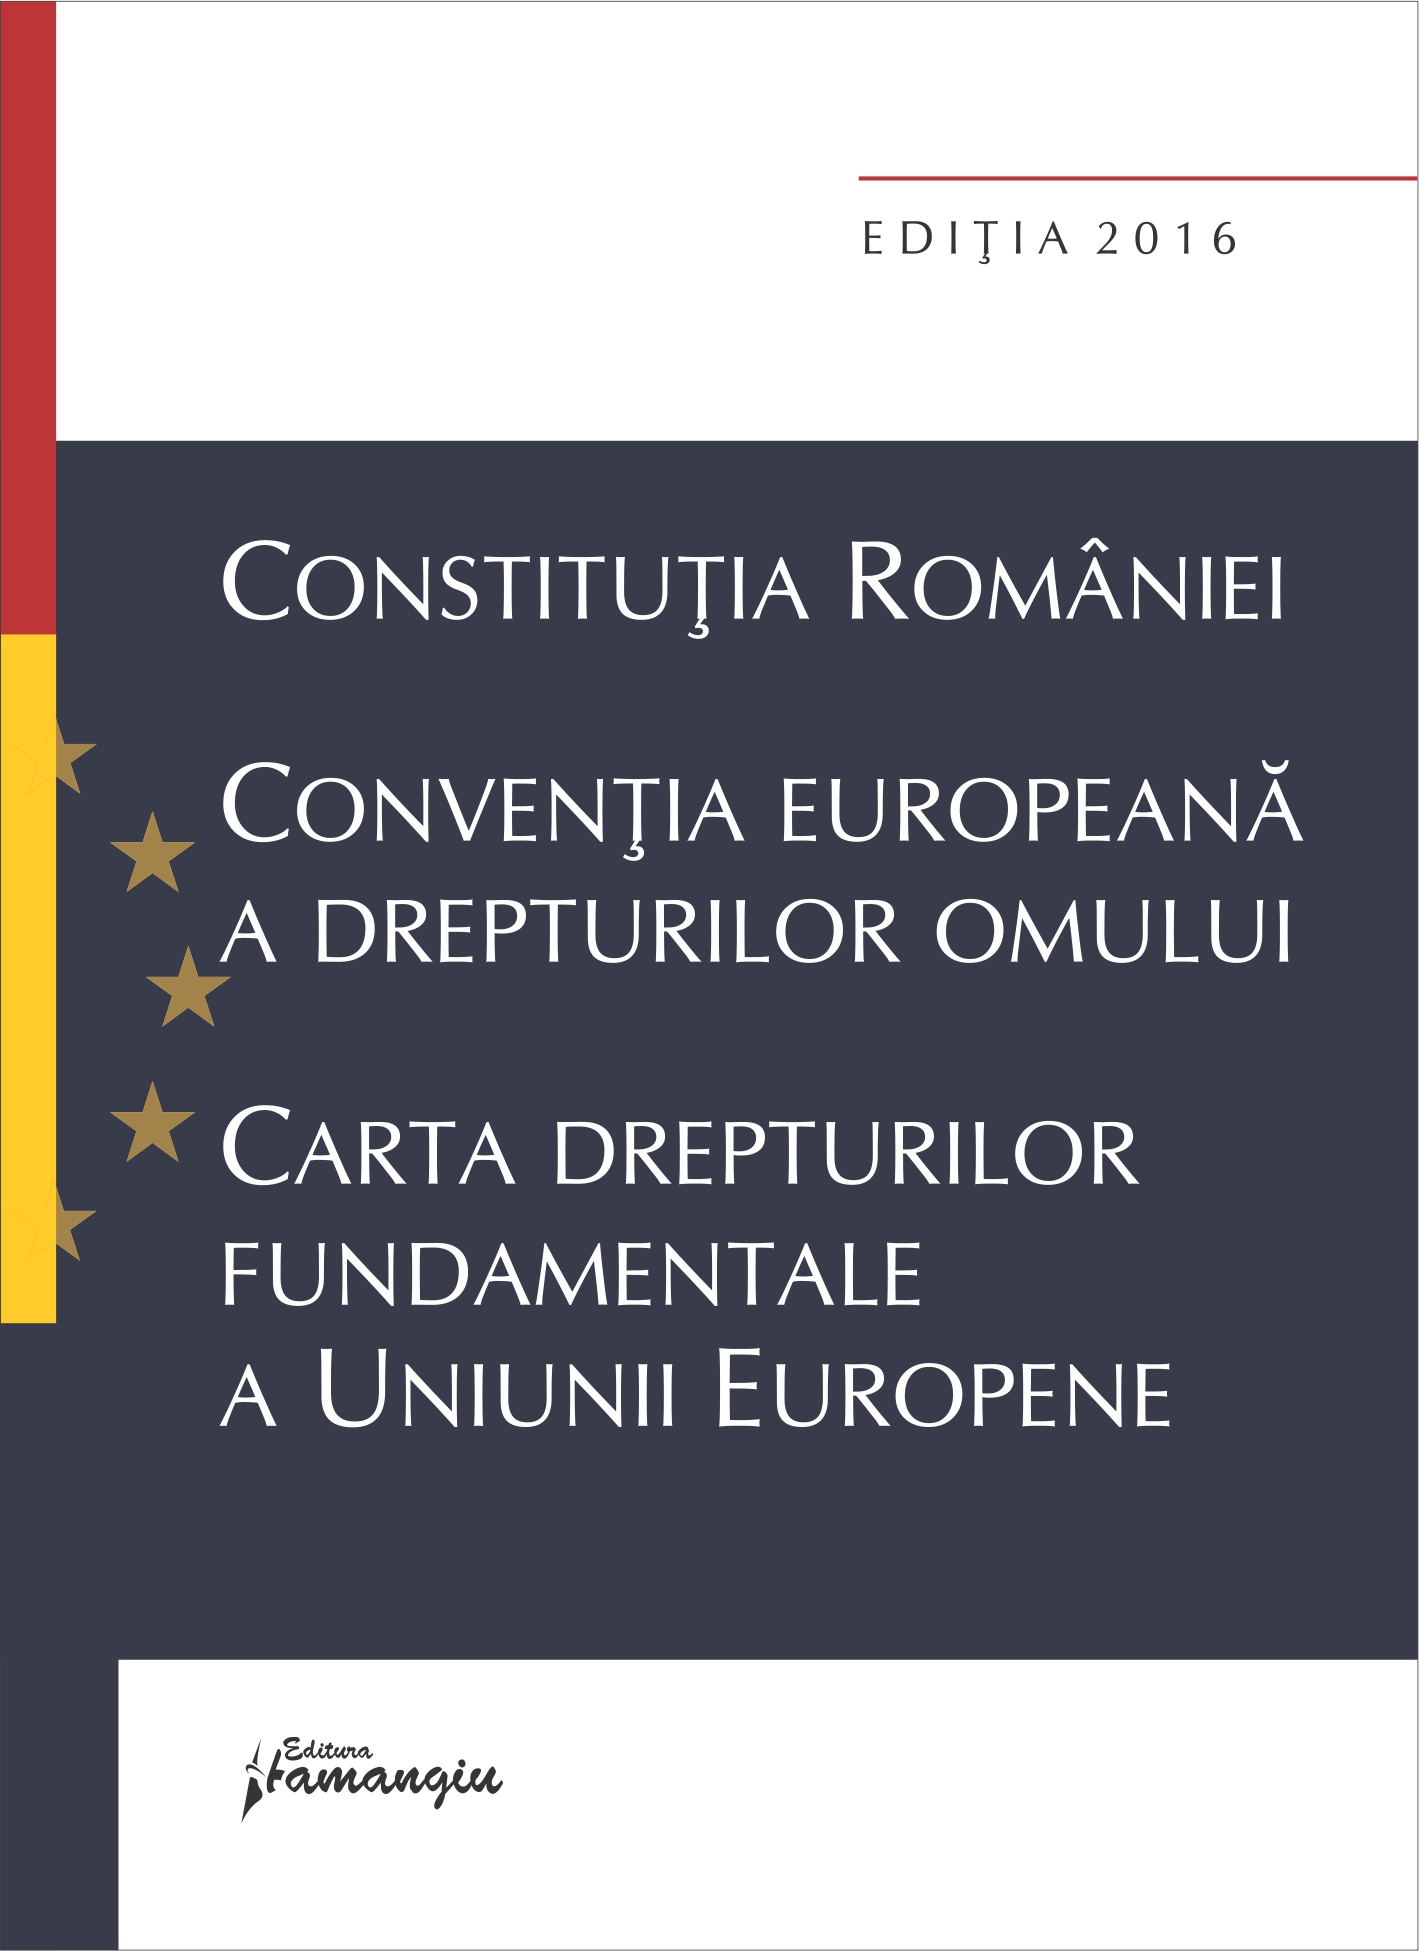 Constitutia Romaniei, Conventia europeana a drepturilor omului, Carta drepturilor fundamentale a Uniunii Europene 